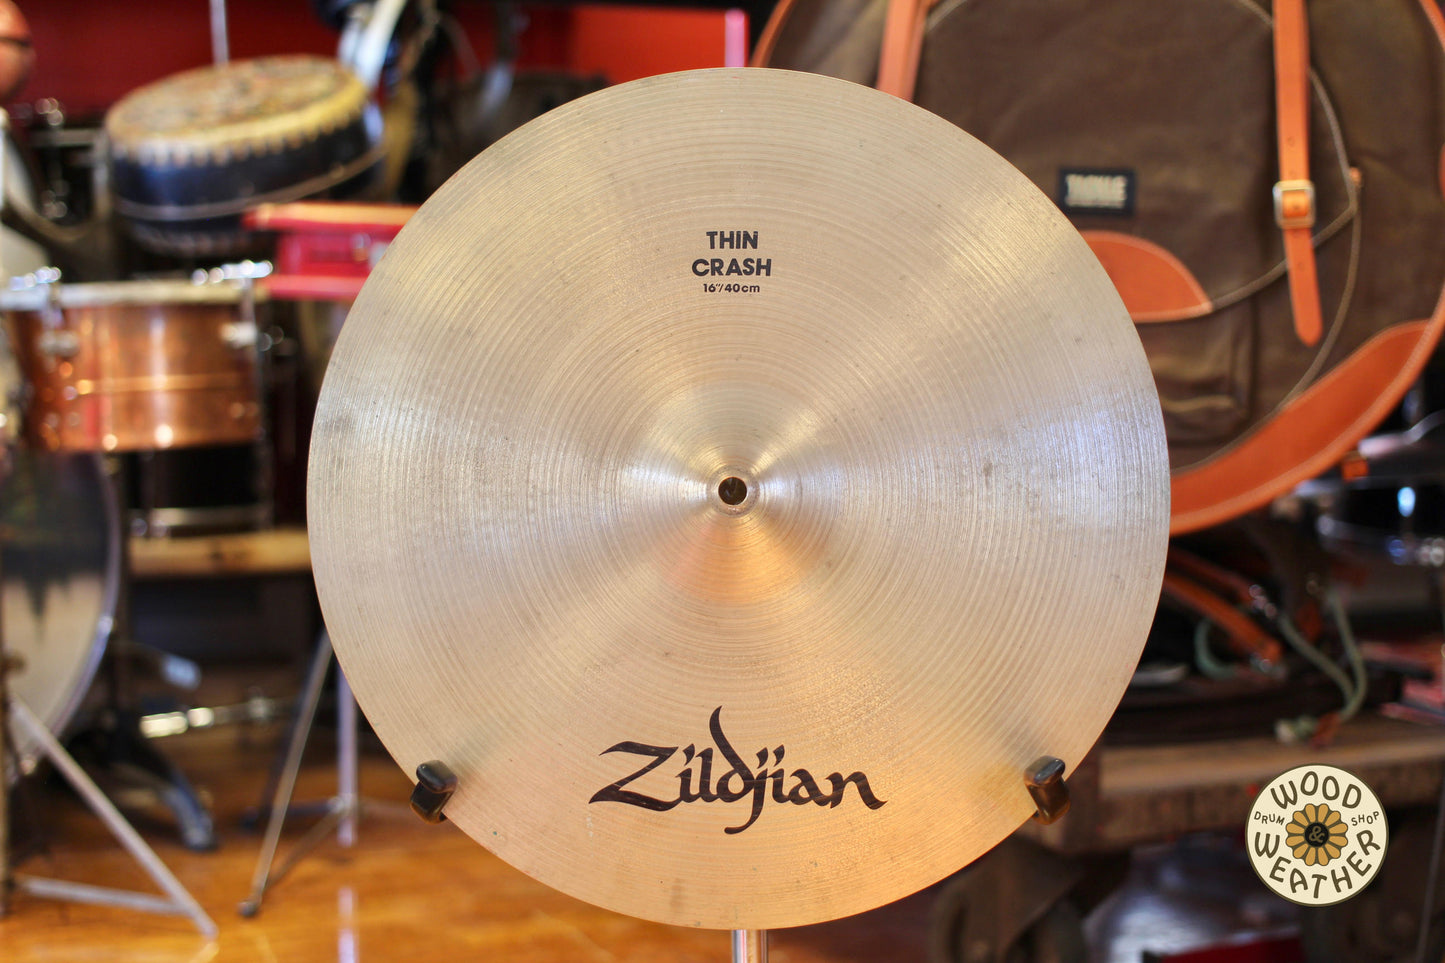 1980s Avedis Zildjian 16" Thin Crash Cymbal 1040g